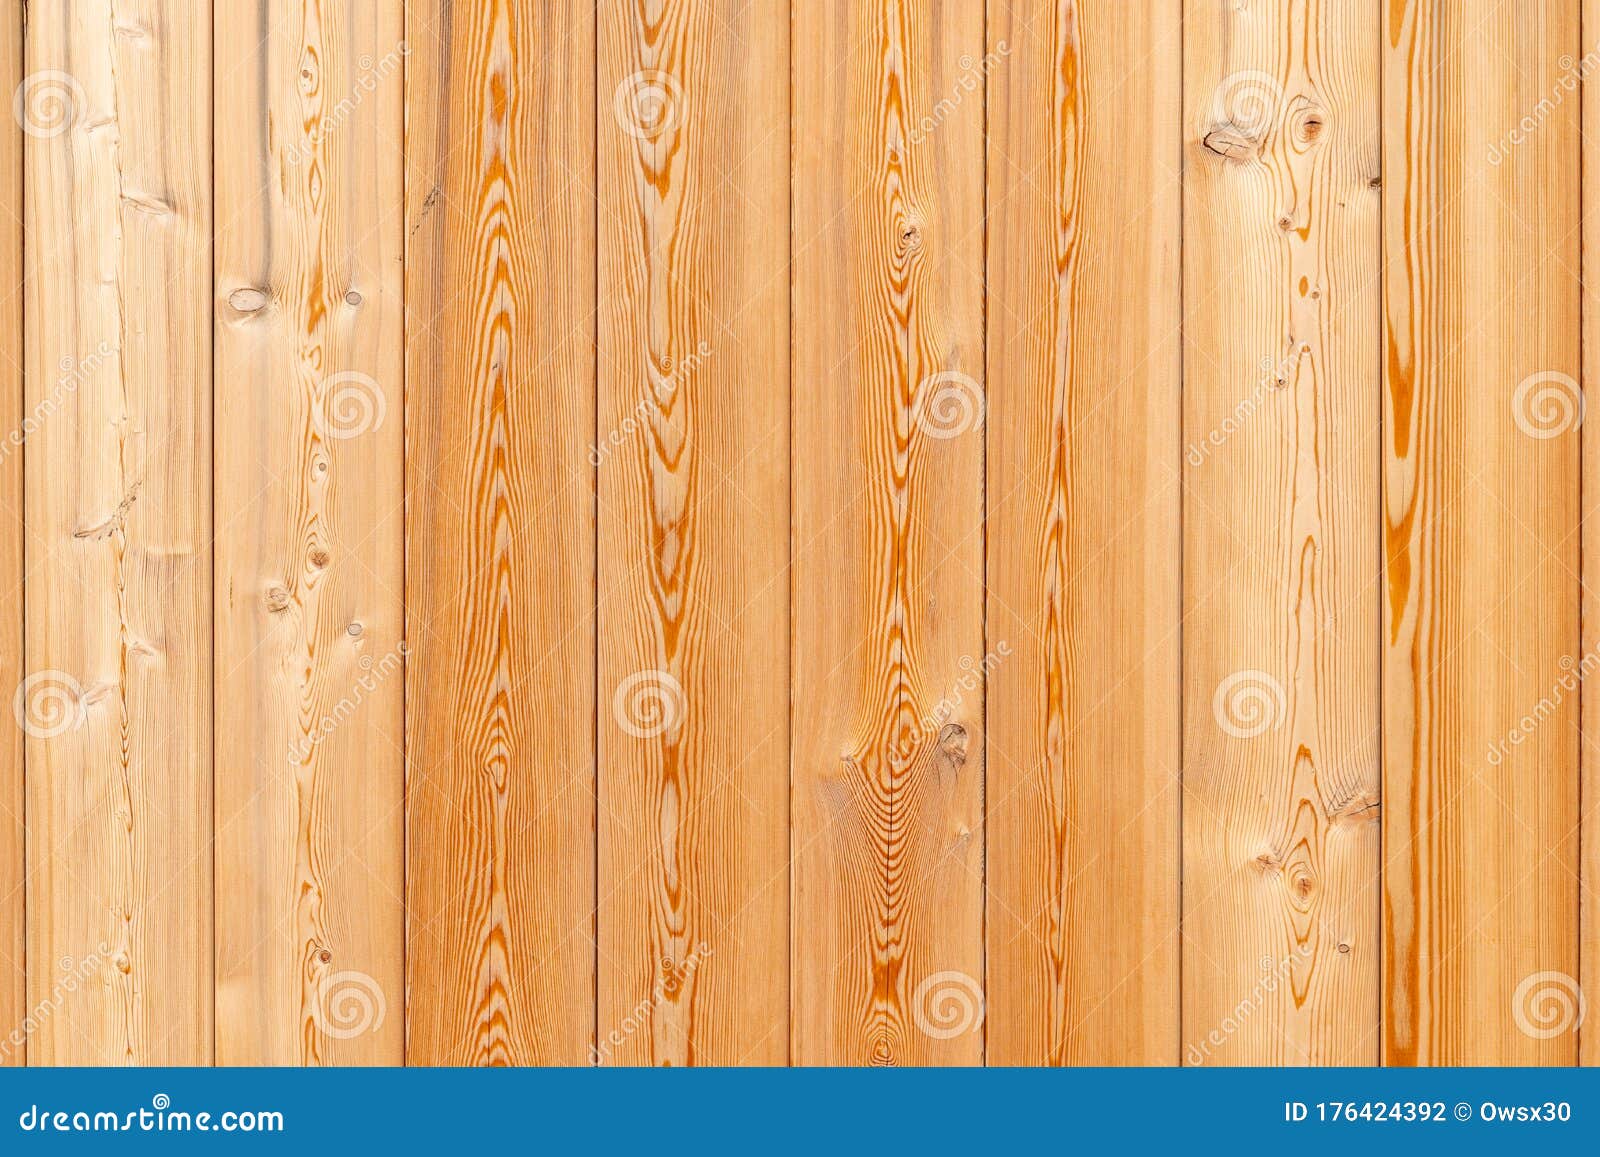 垂直排列的木松板背景关闭库存照片 图片包括有关闭 垂直排列的木松板背景